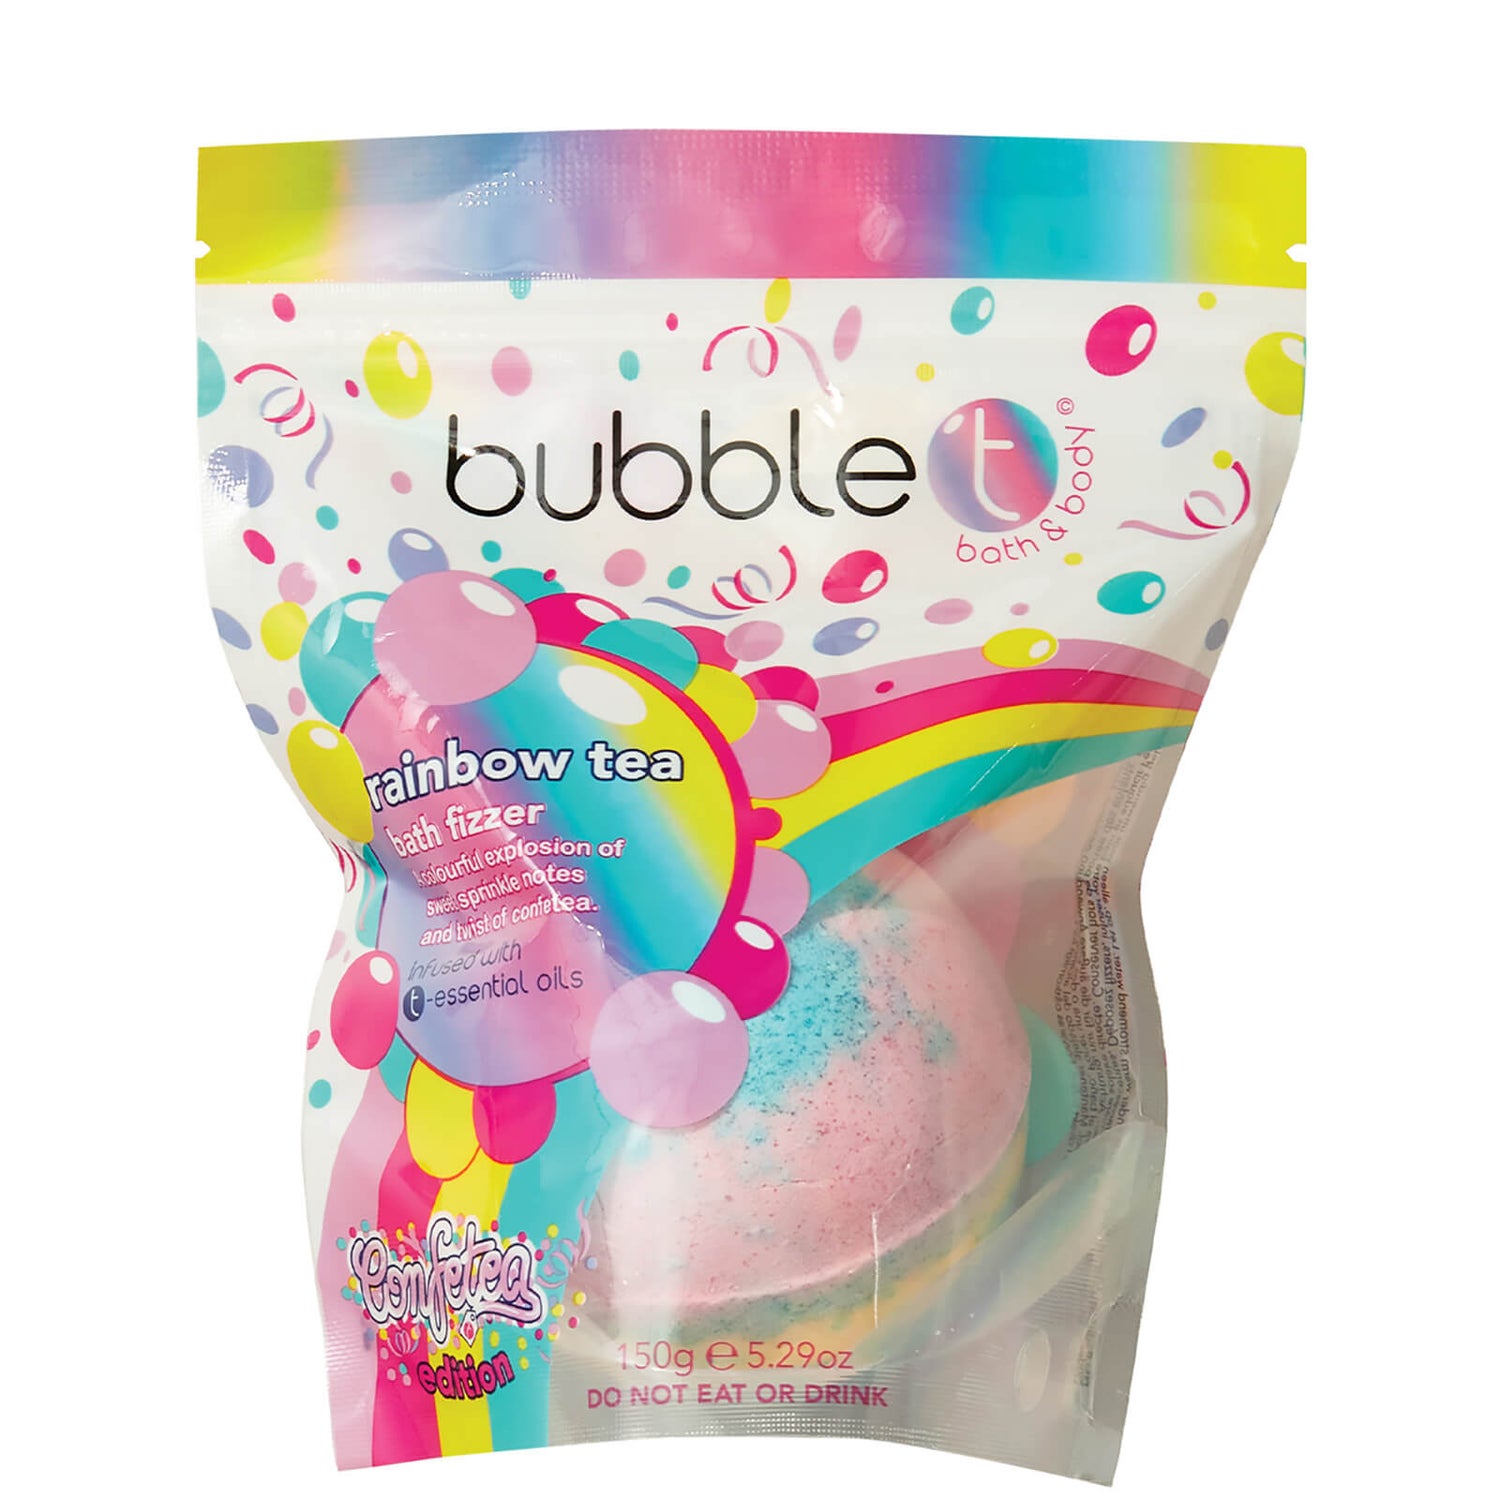 Bubble T Confetea Rainbow Bath Fizzer 150g